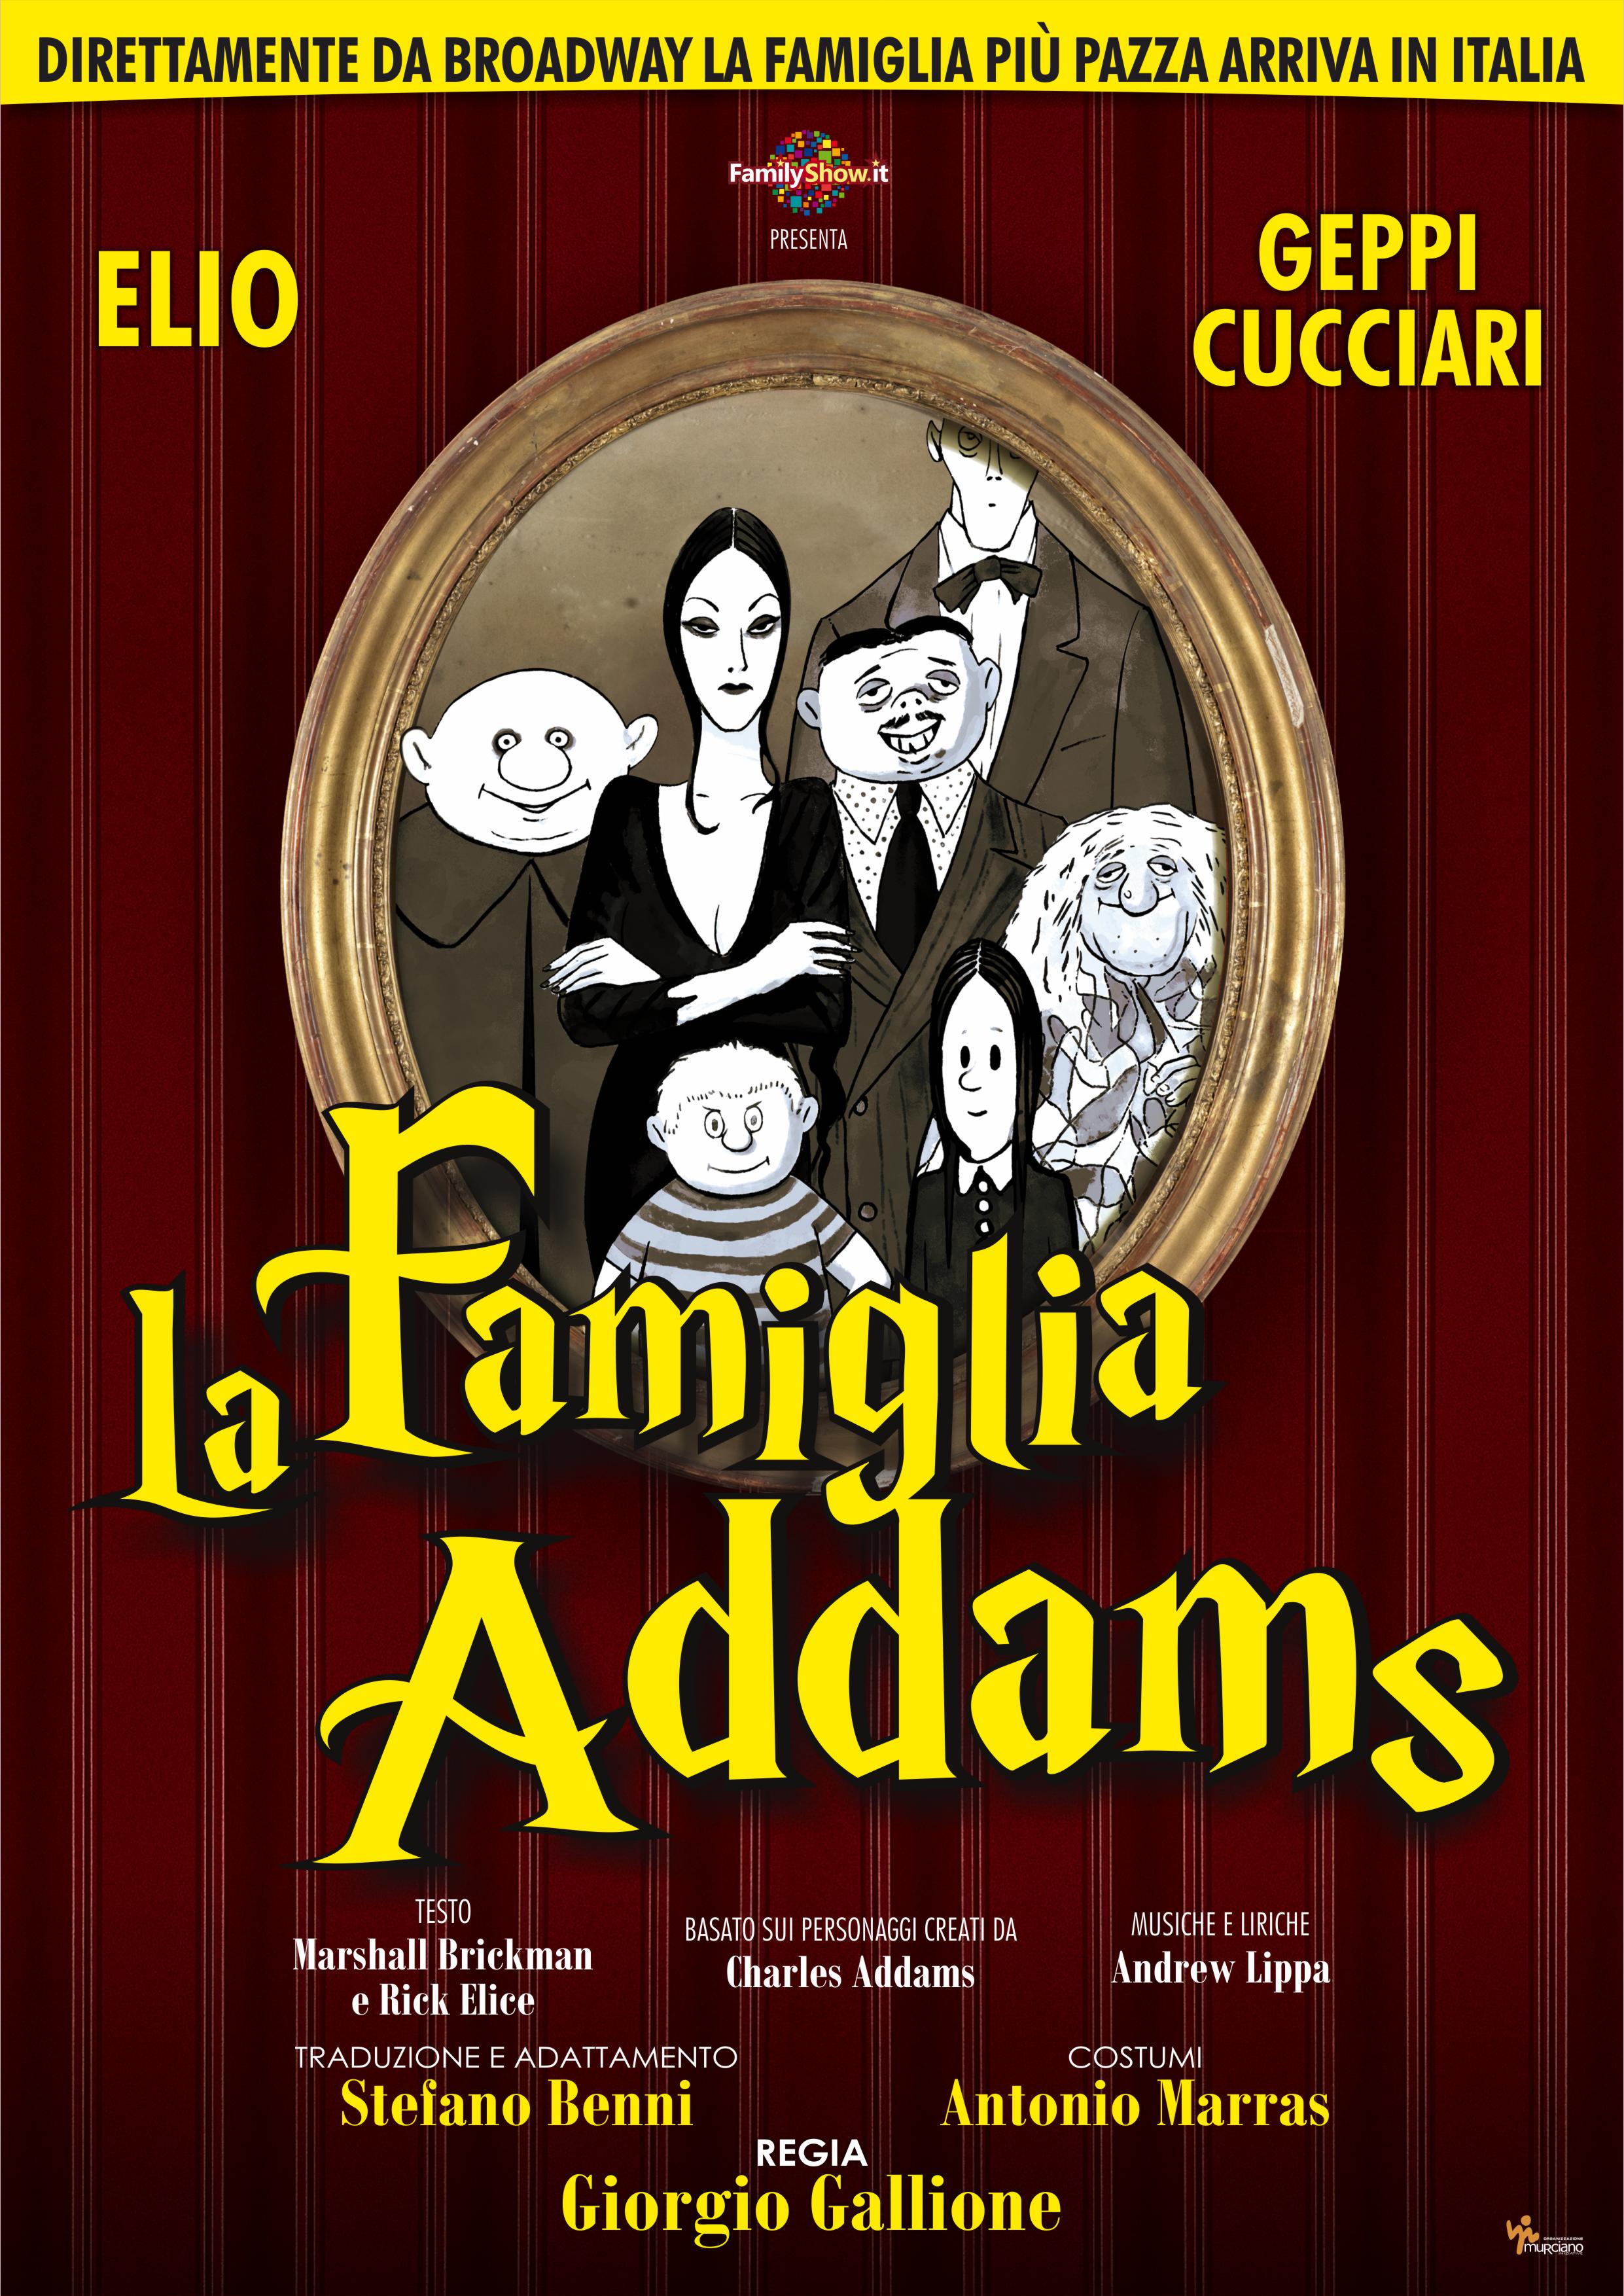 Elio & Geppi Cucciari - La Famiglia Addams - locandina ufficiale